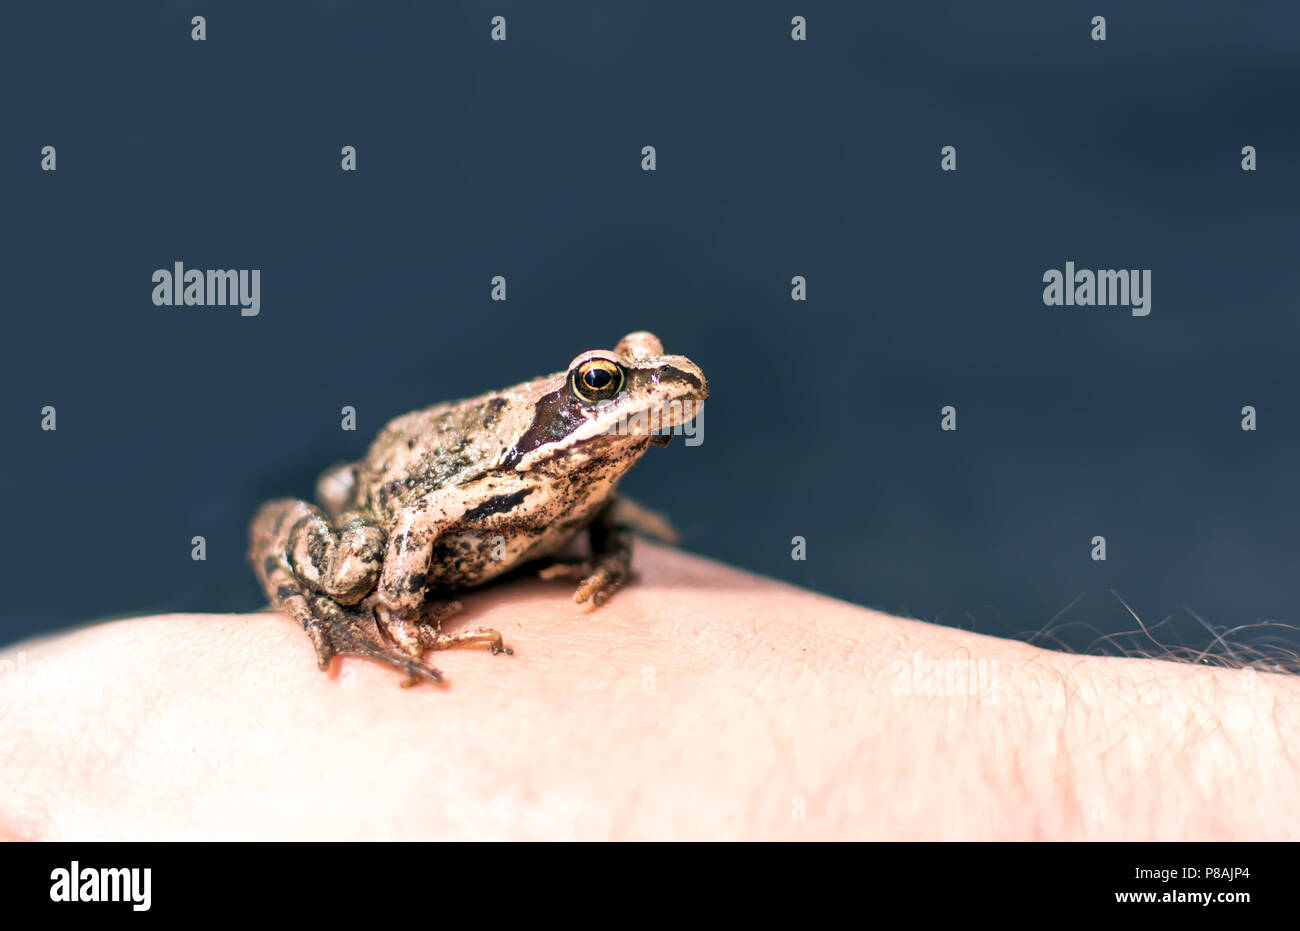 Slim, marrone rossastro Moor frog (Rana arvalis) seduto su una mano d'uomo. Questo semiaquatic anfibi è un membro della famiglia ranidi, o vero rane. Foto Stock